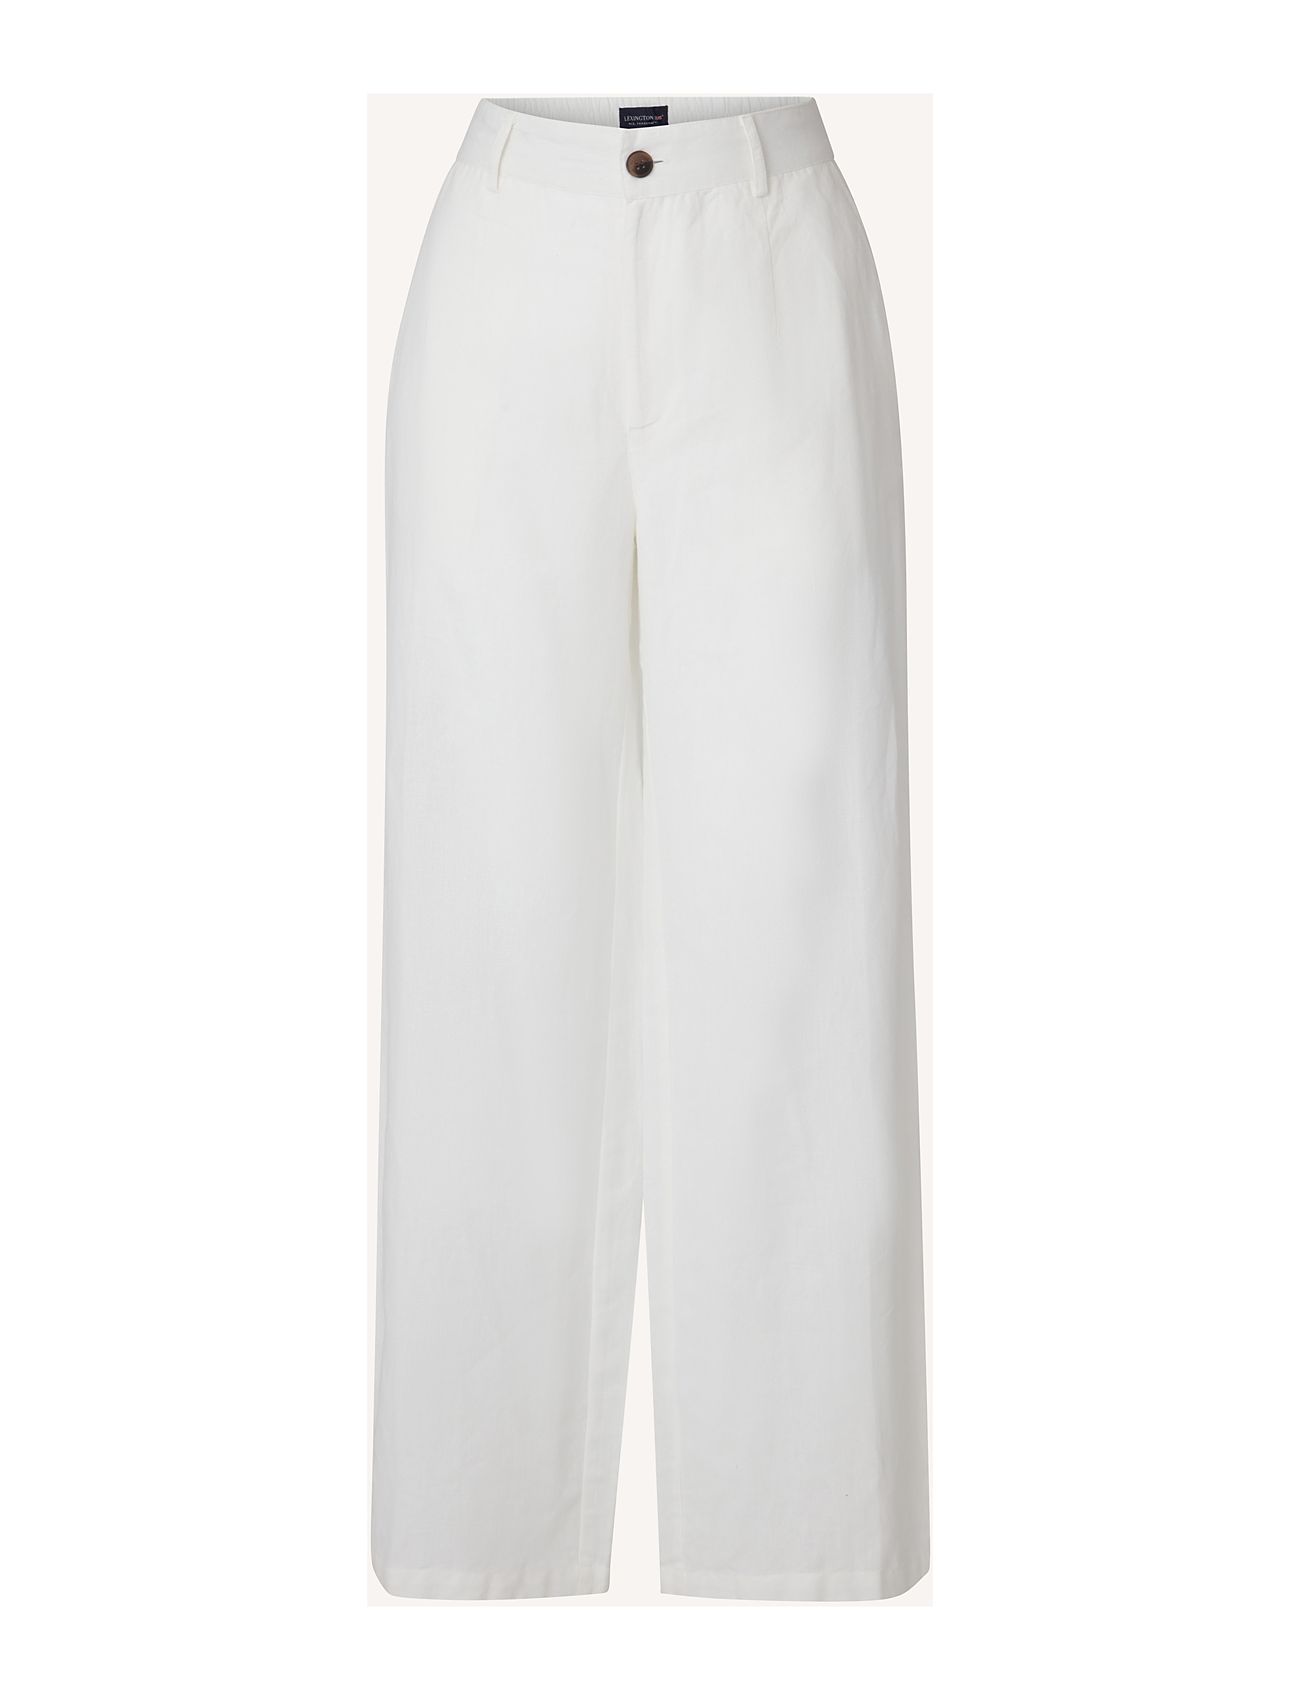 Cleo Linen/Cotton Blend Pants Bottoms Trousers Linen Trousers White Lexington Clothing